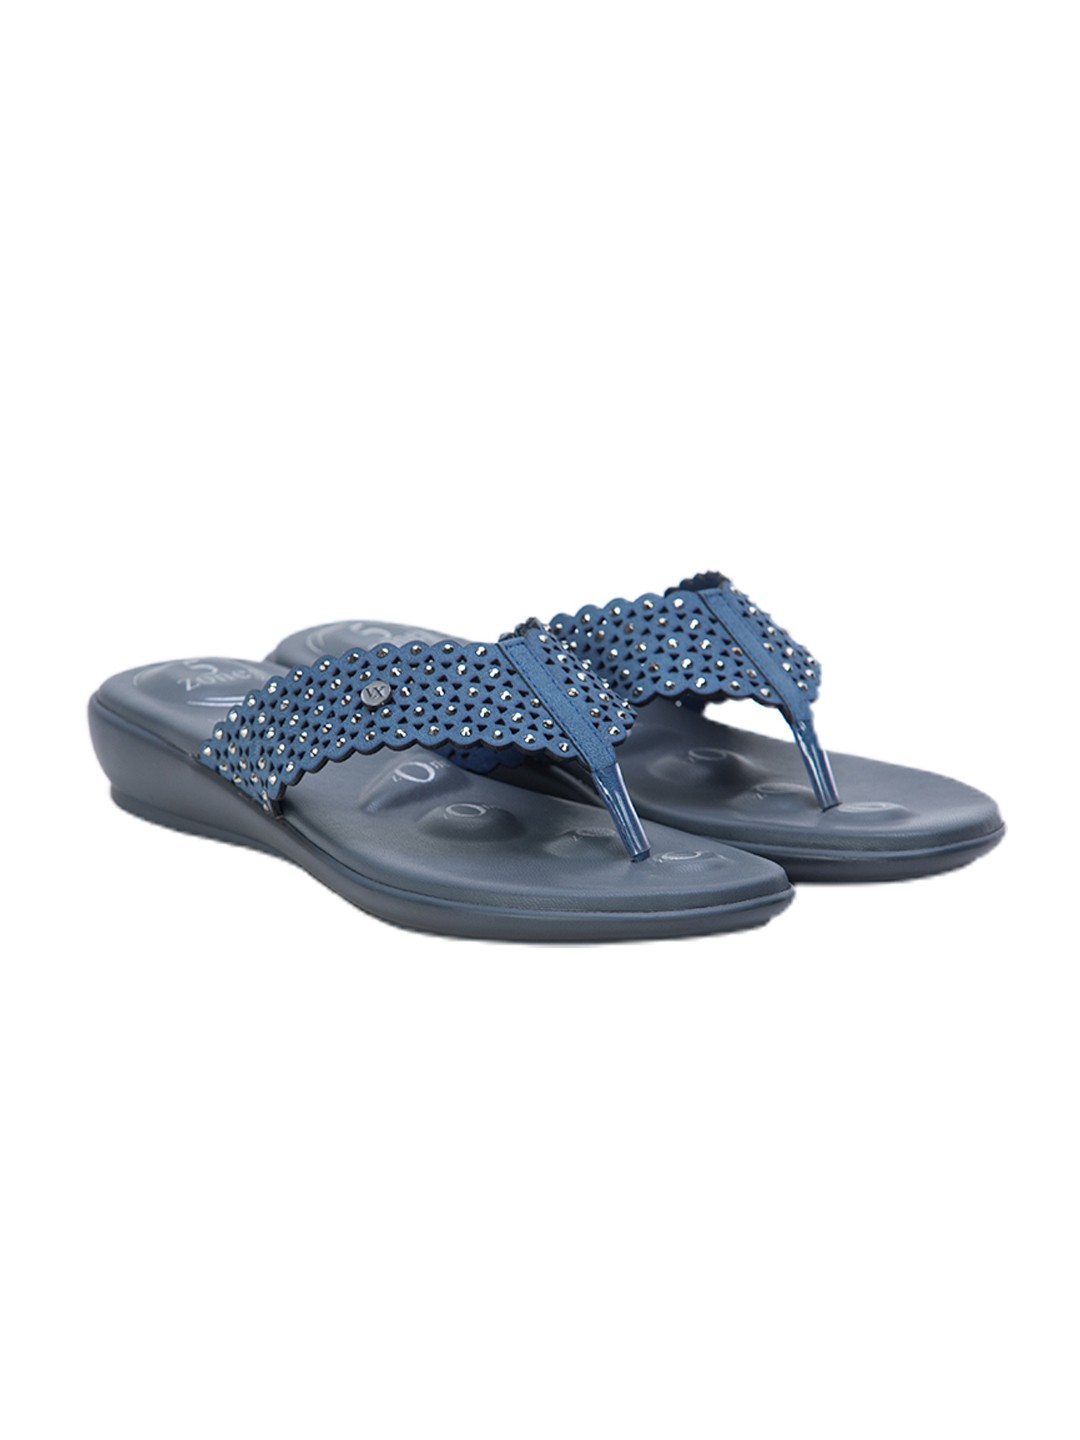 Buy Von Wellx Germany Comfort Gleam Blue Slippers Online in Mysore